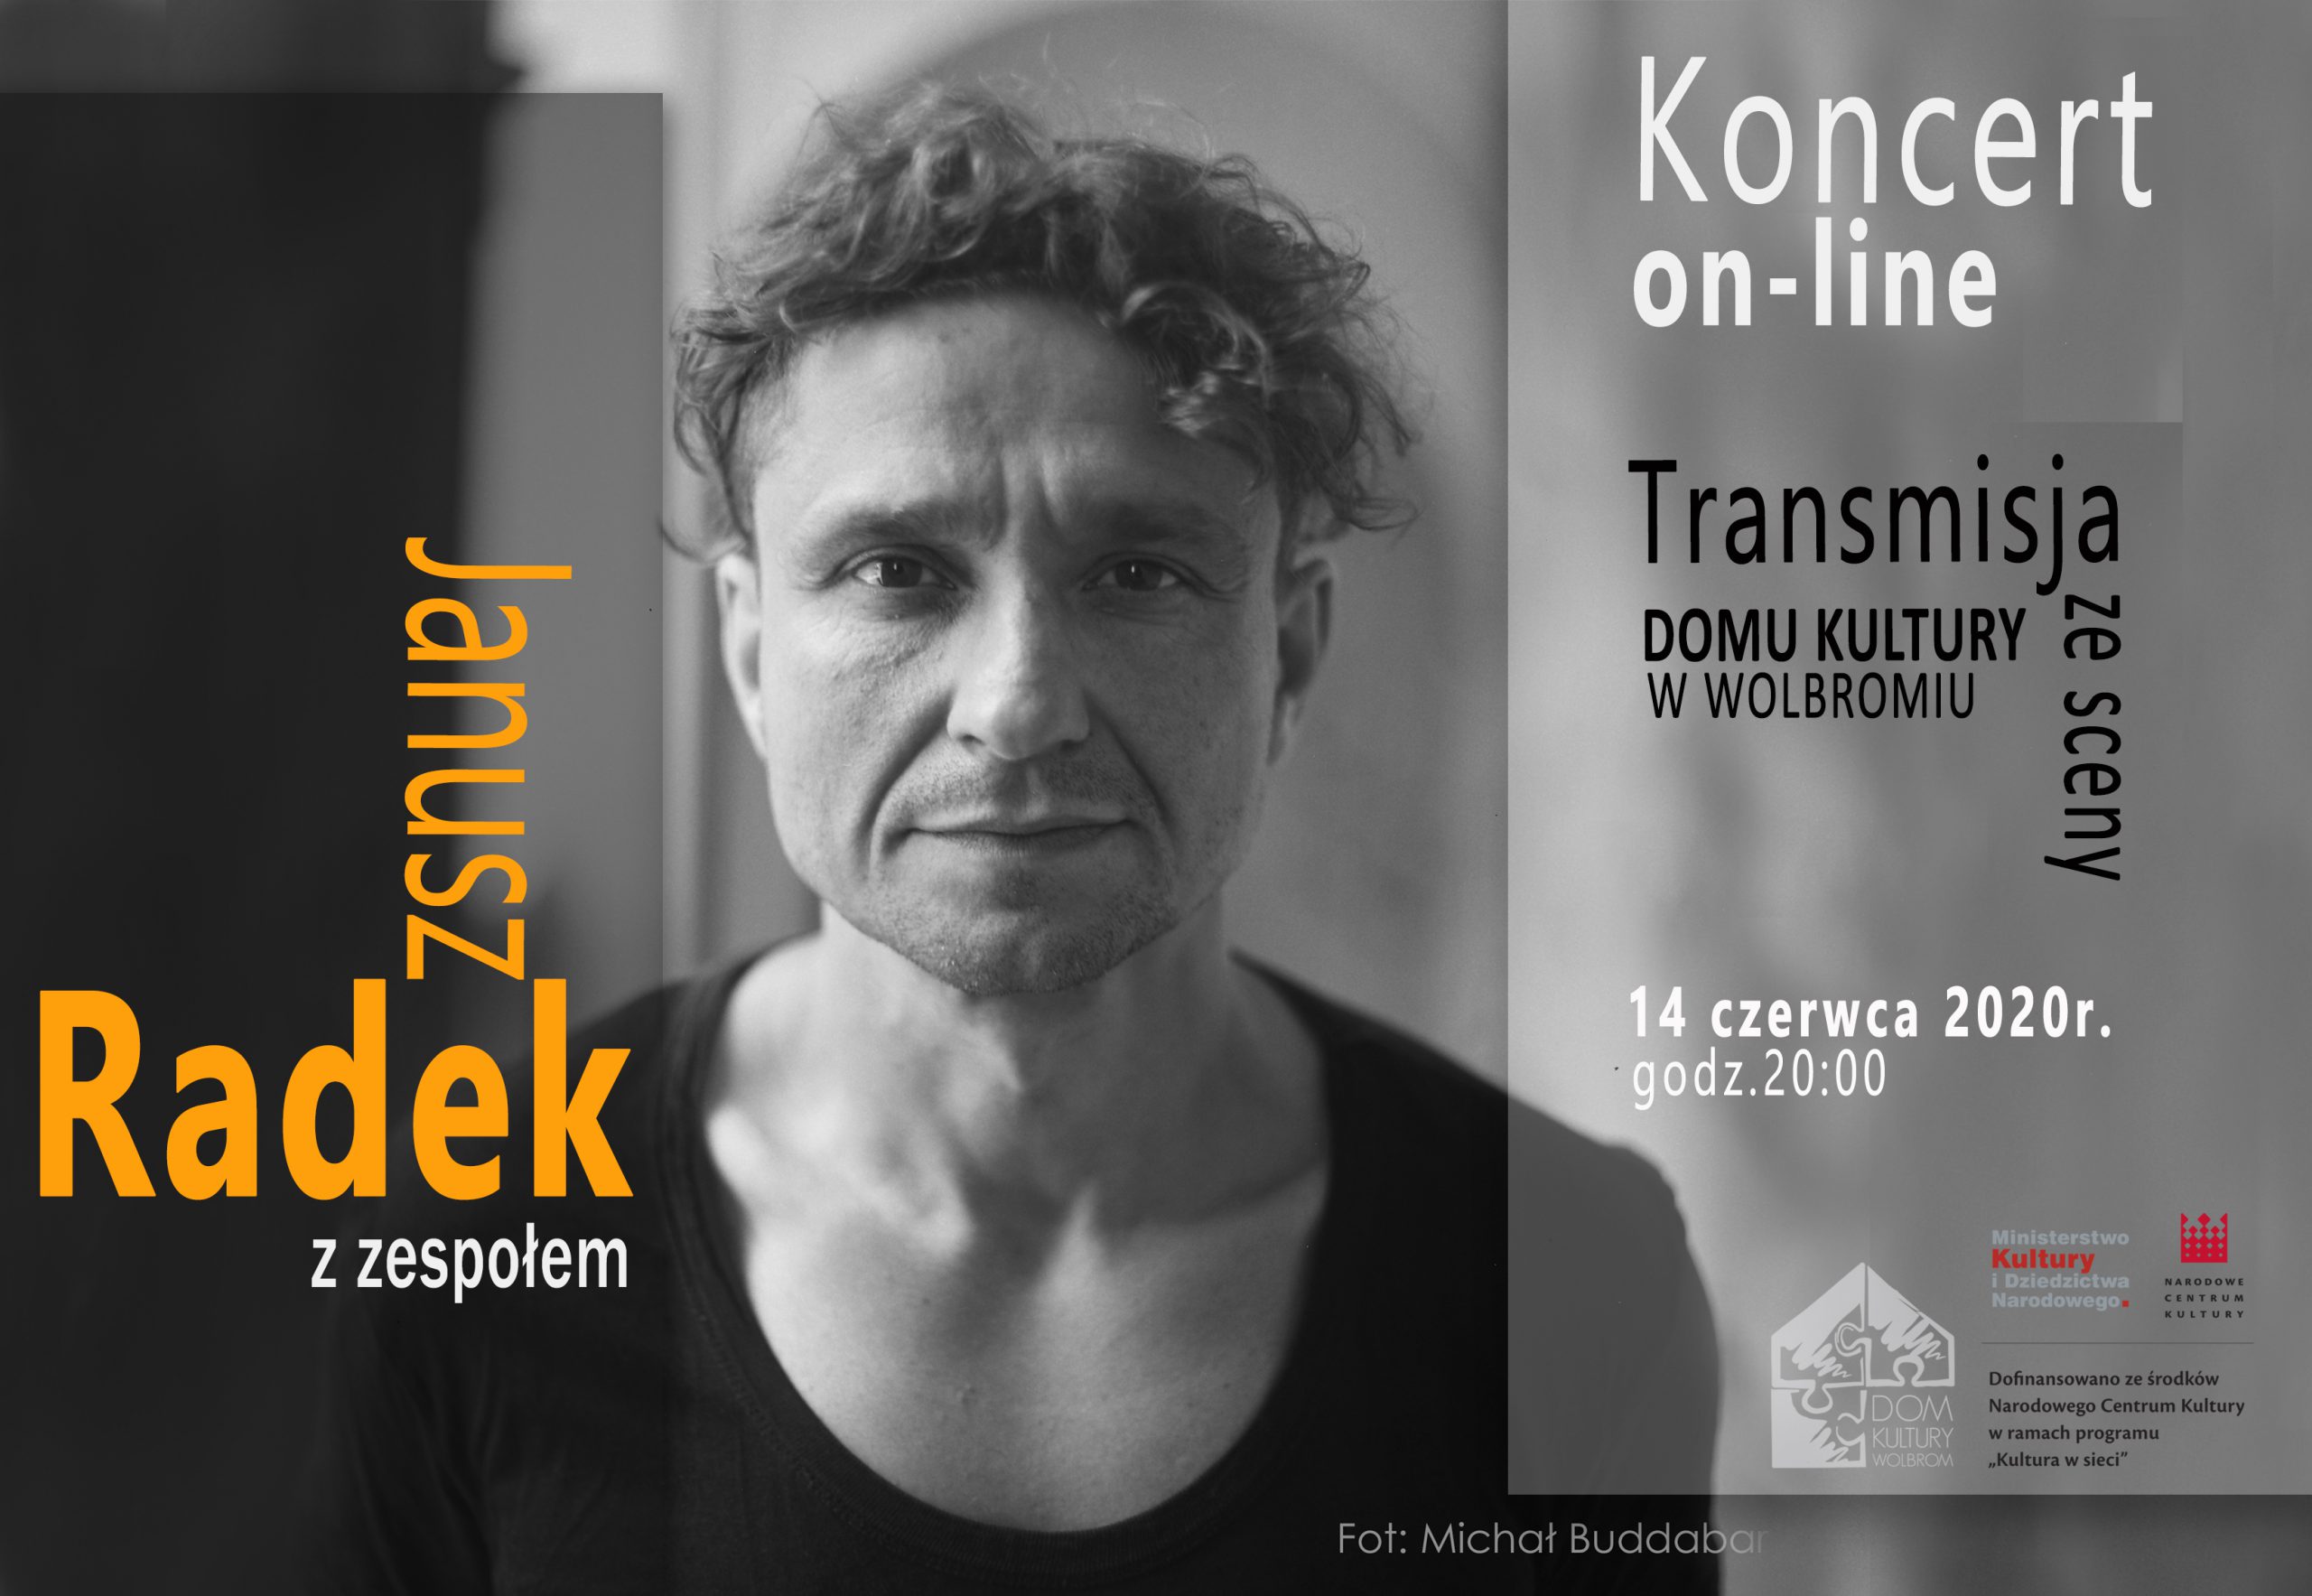 Janusz Radek koncert na żywo ze sceny Domu Kultury w Wolbromiu, transmitowany online. Bezpłatnie!